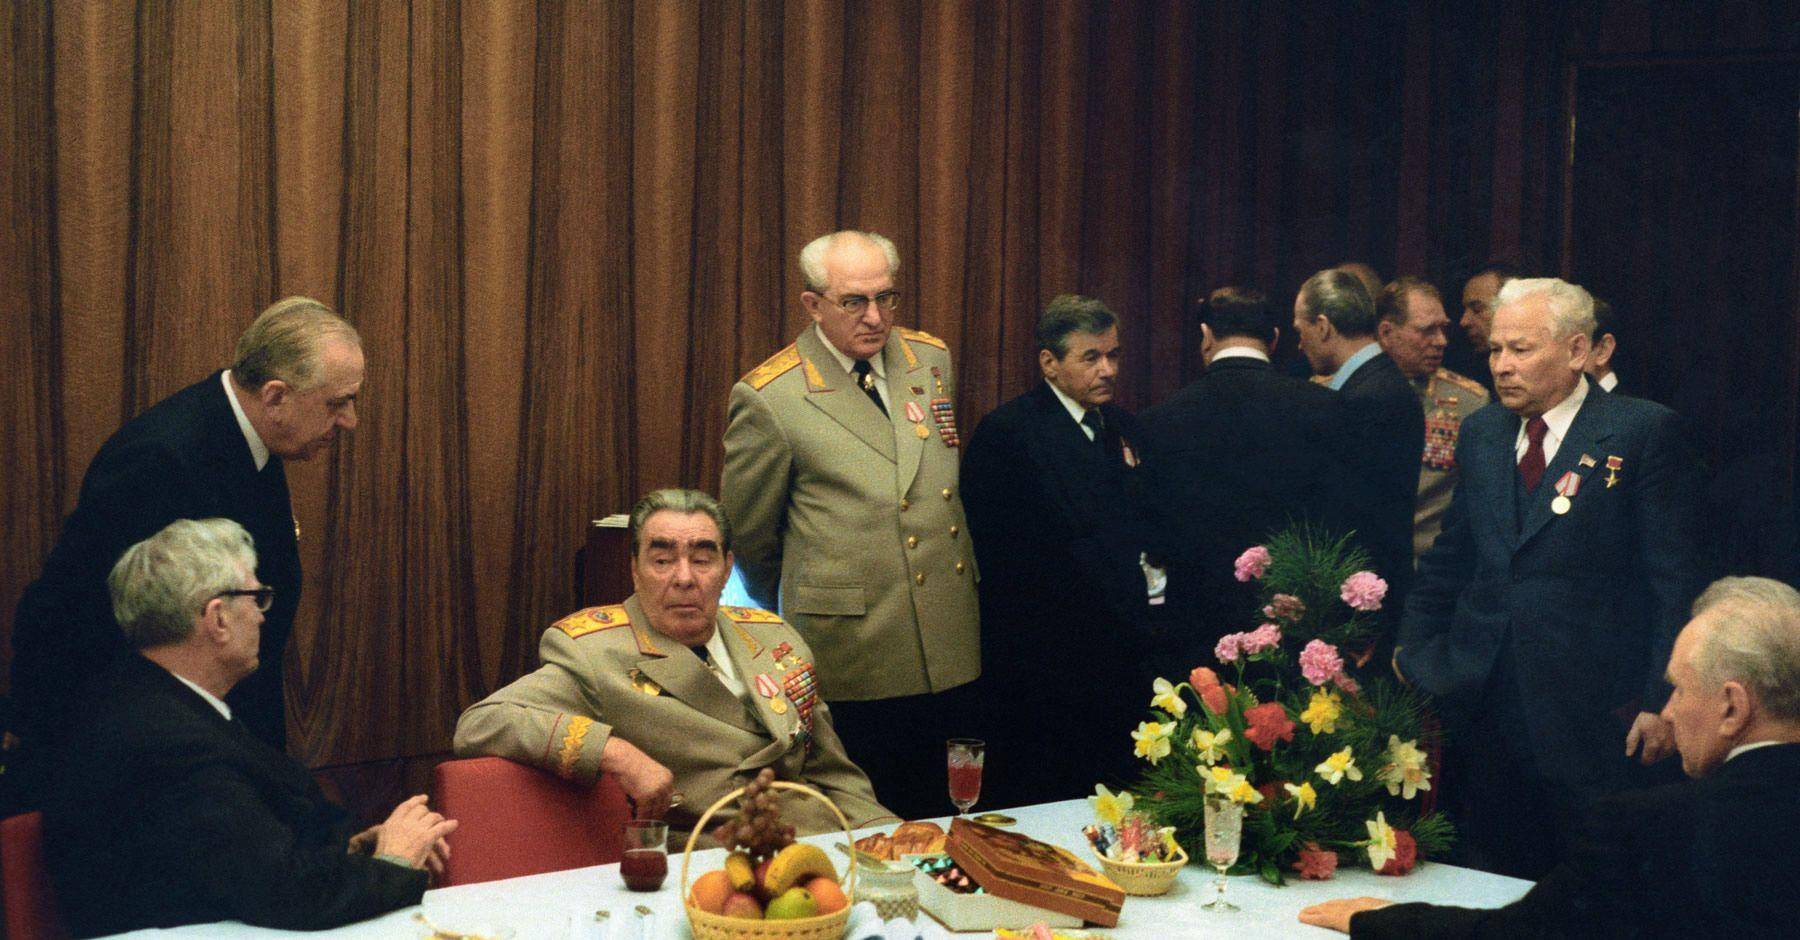 1992年苏联解体后,叶利钦访美遭克林顿无情嘲笑,叶利钦陪同傻笑